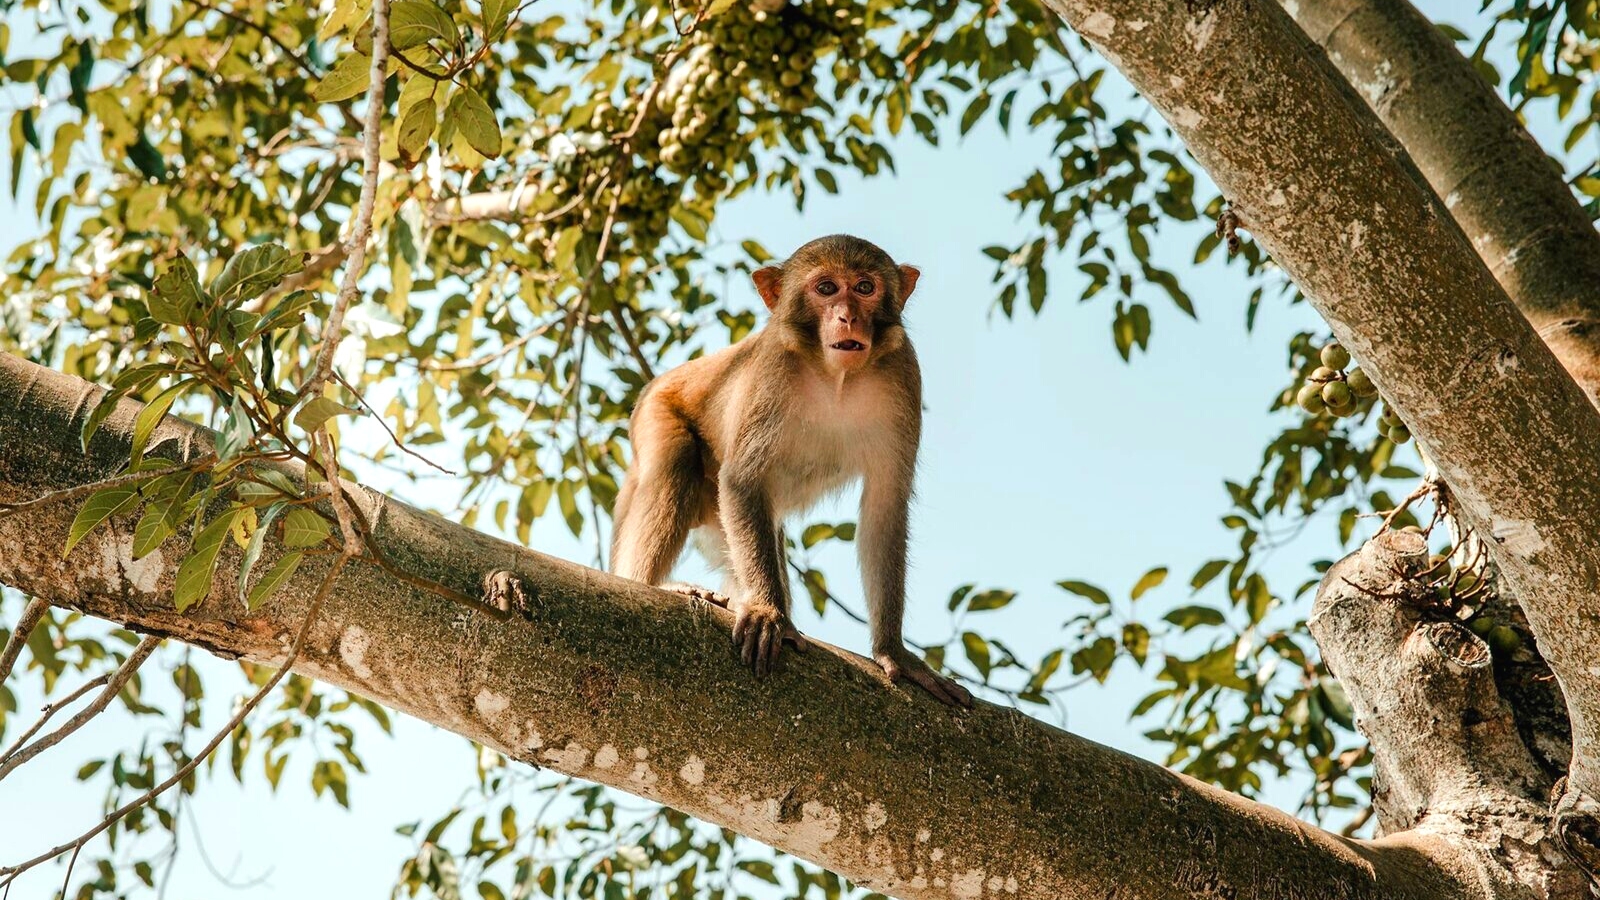 Cute monkey in Monkey Island